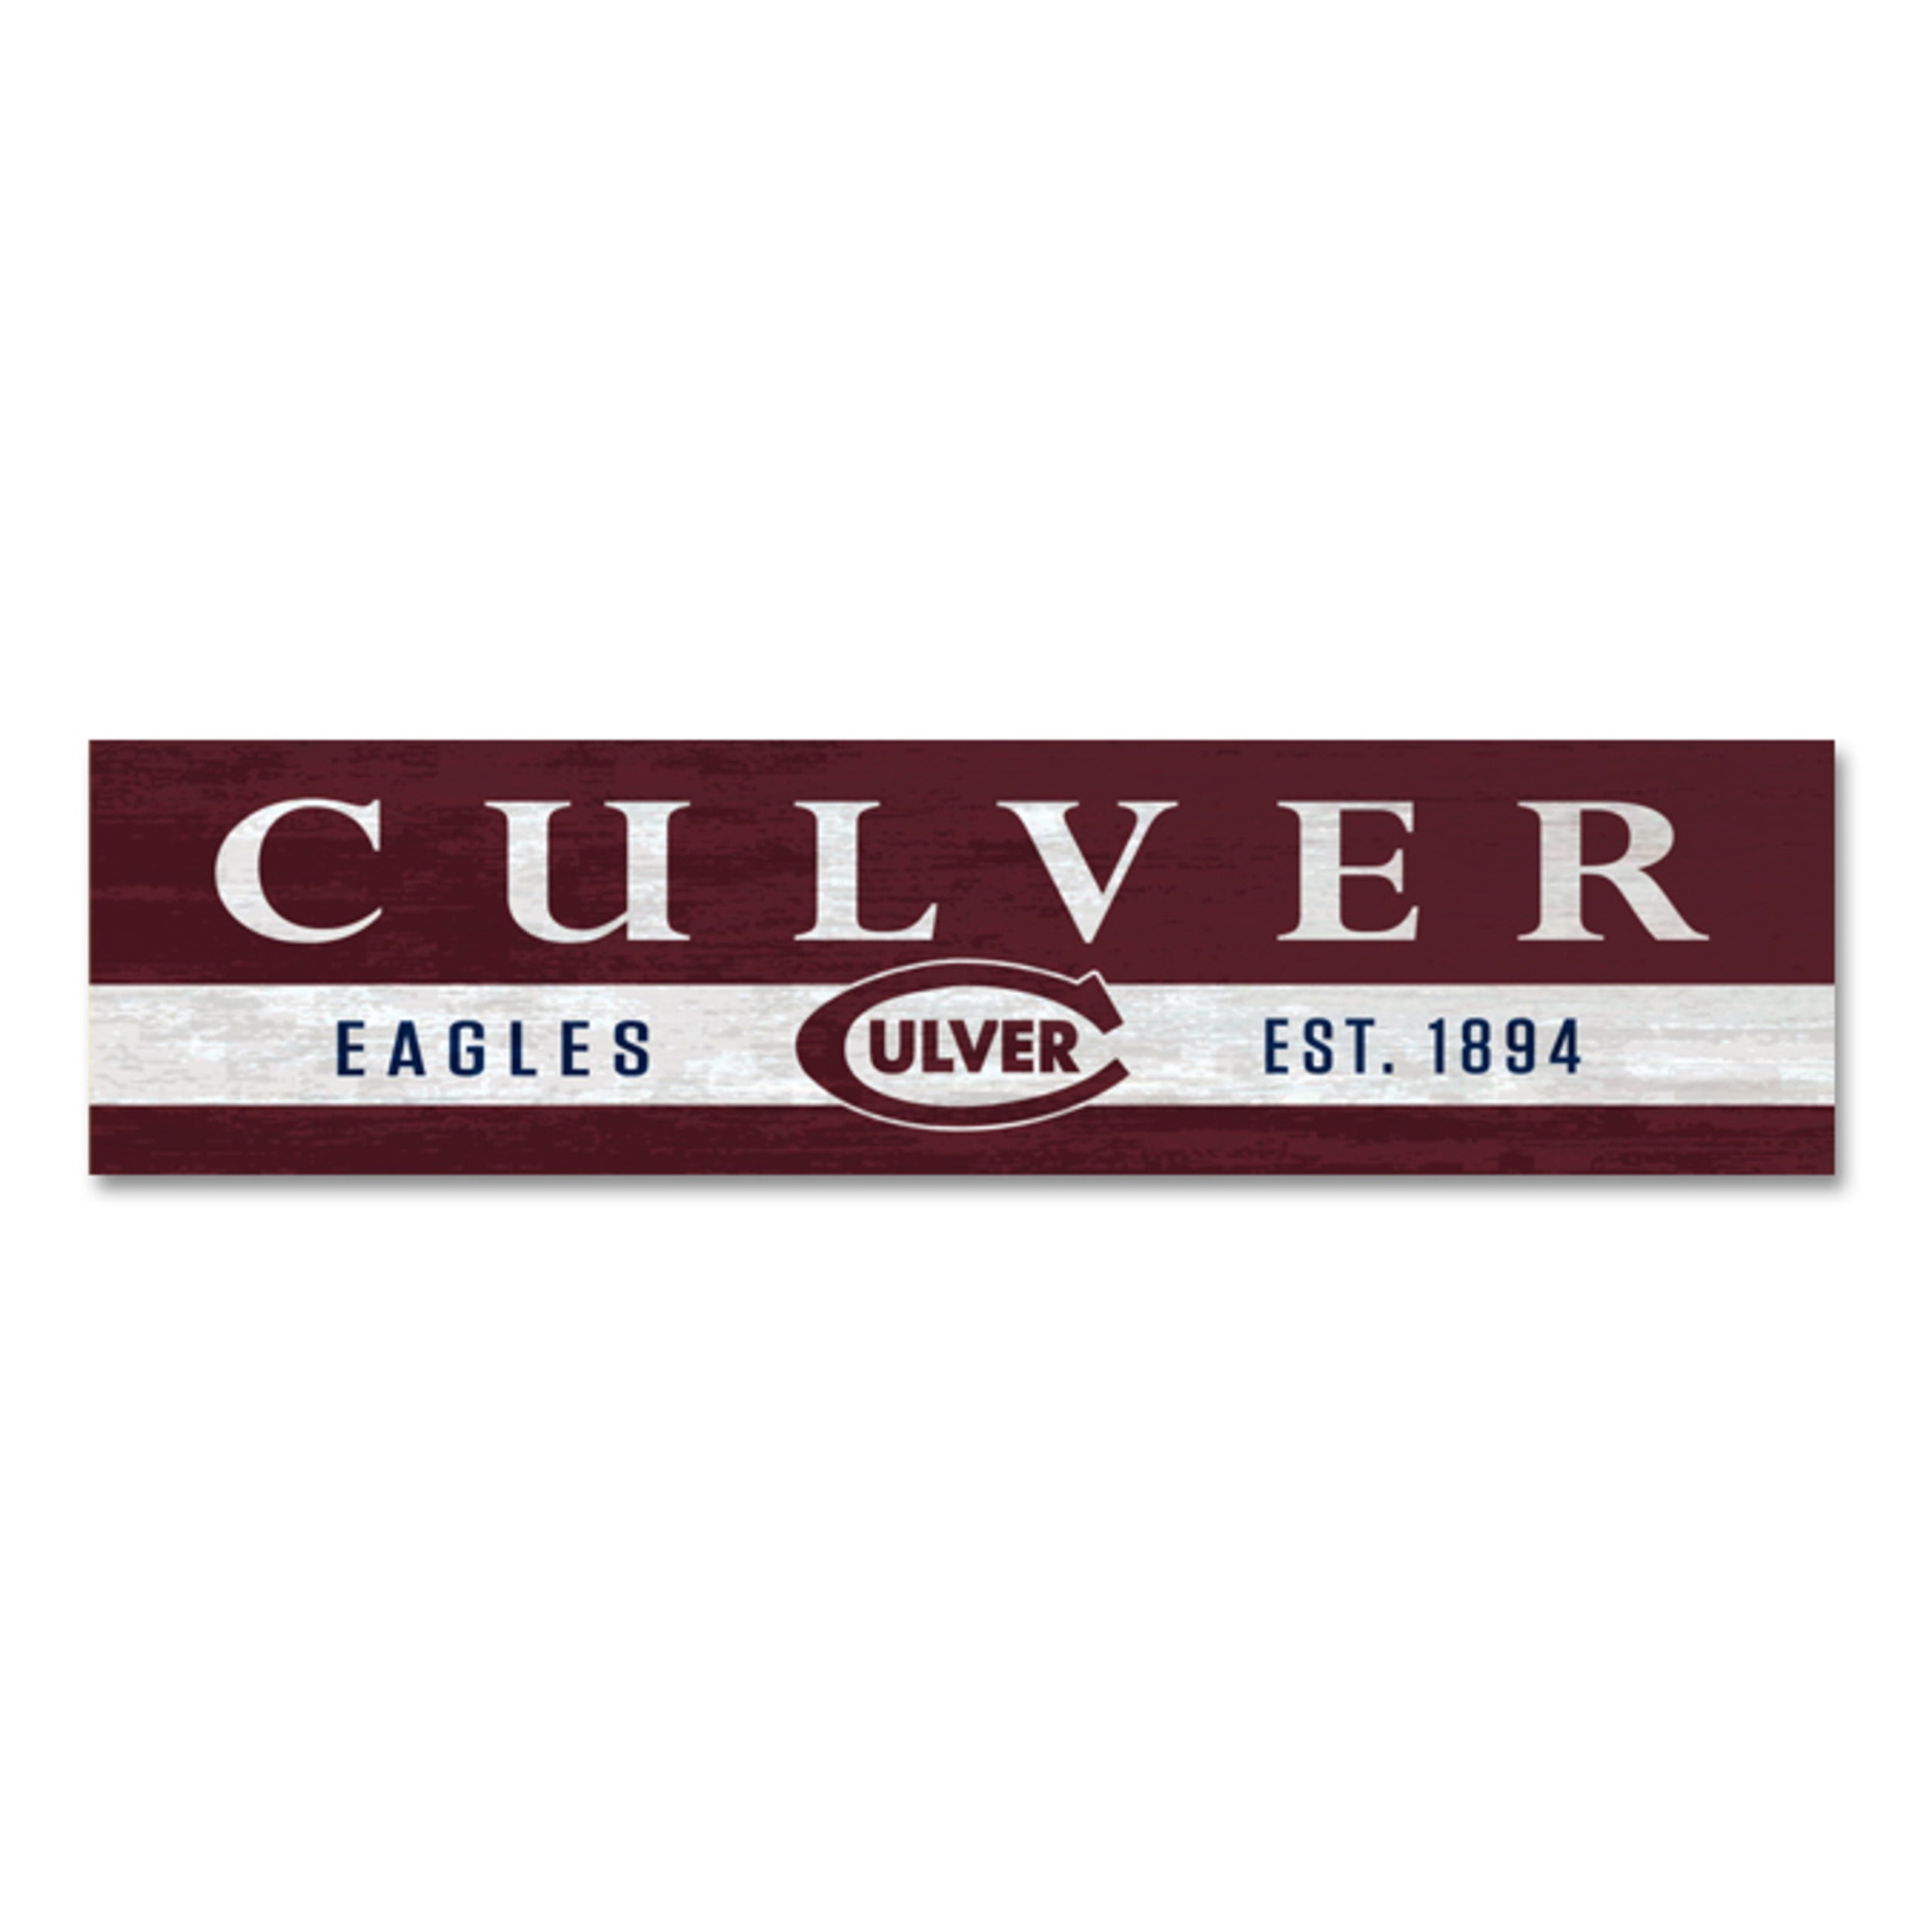 Culver Eagles 1894 Plank Stick Magnet